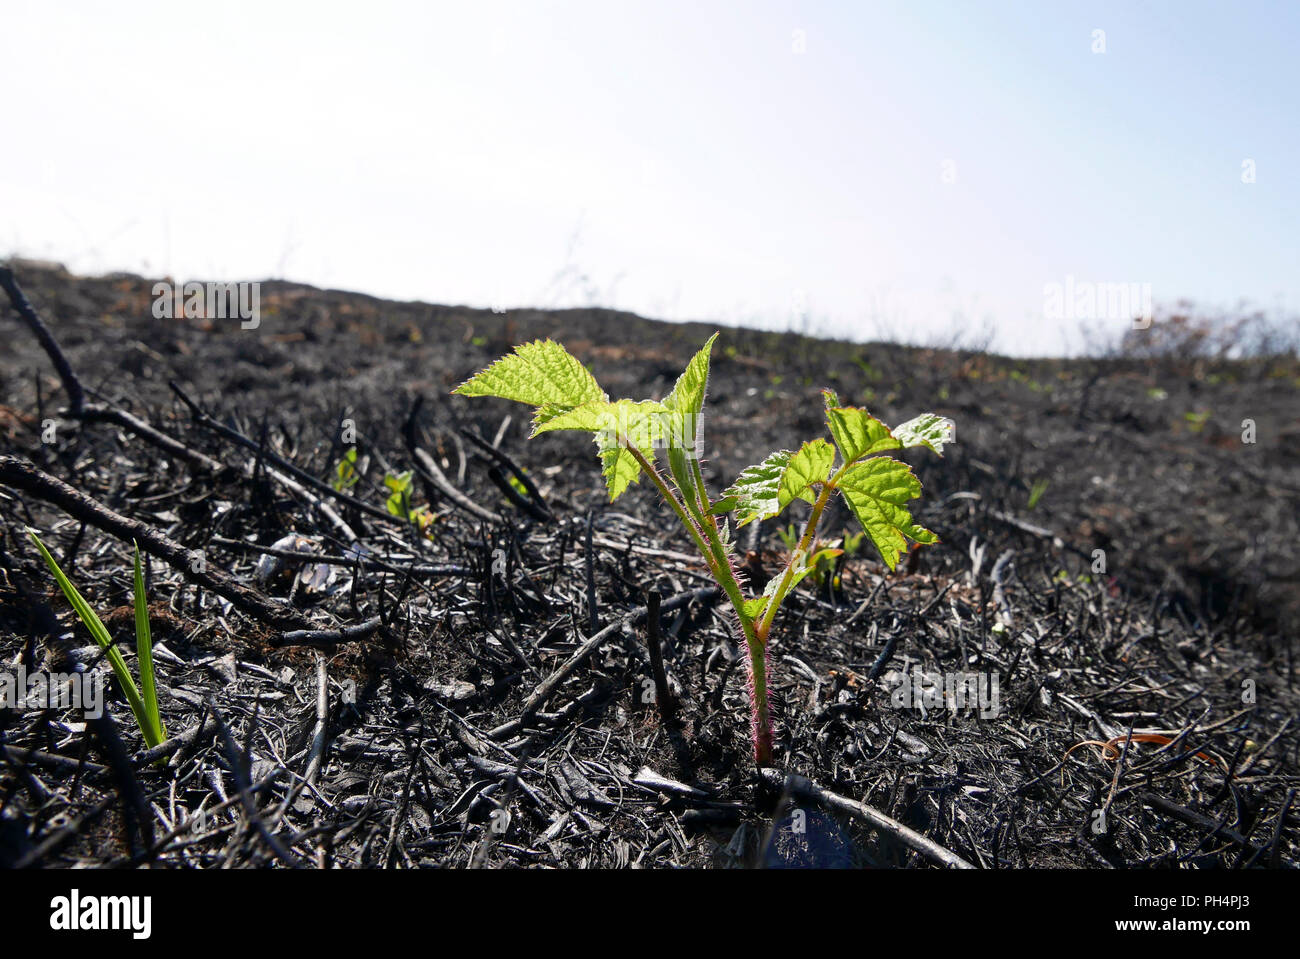 De nouvelles pousses apparaissent à partir de la terre brûlée dans les semaines d'un feu sauvage destructeur sur St Annes nature reserve, lancashire, UK Banque D'Images